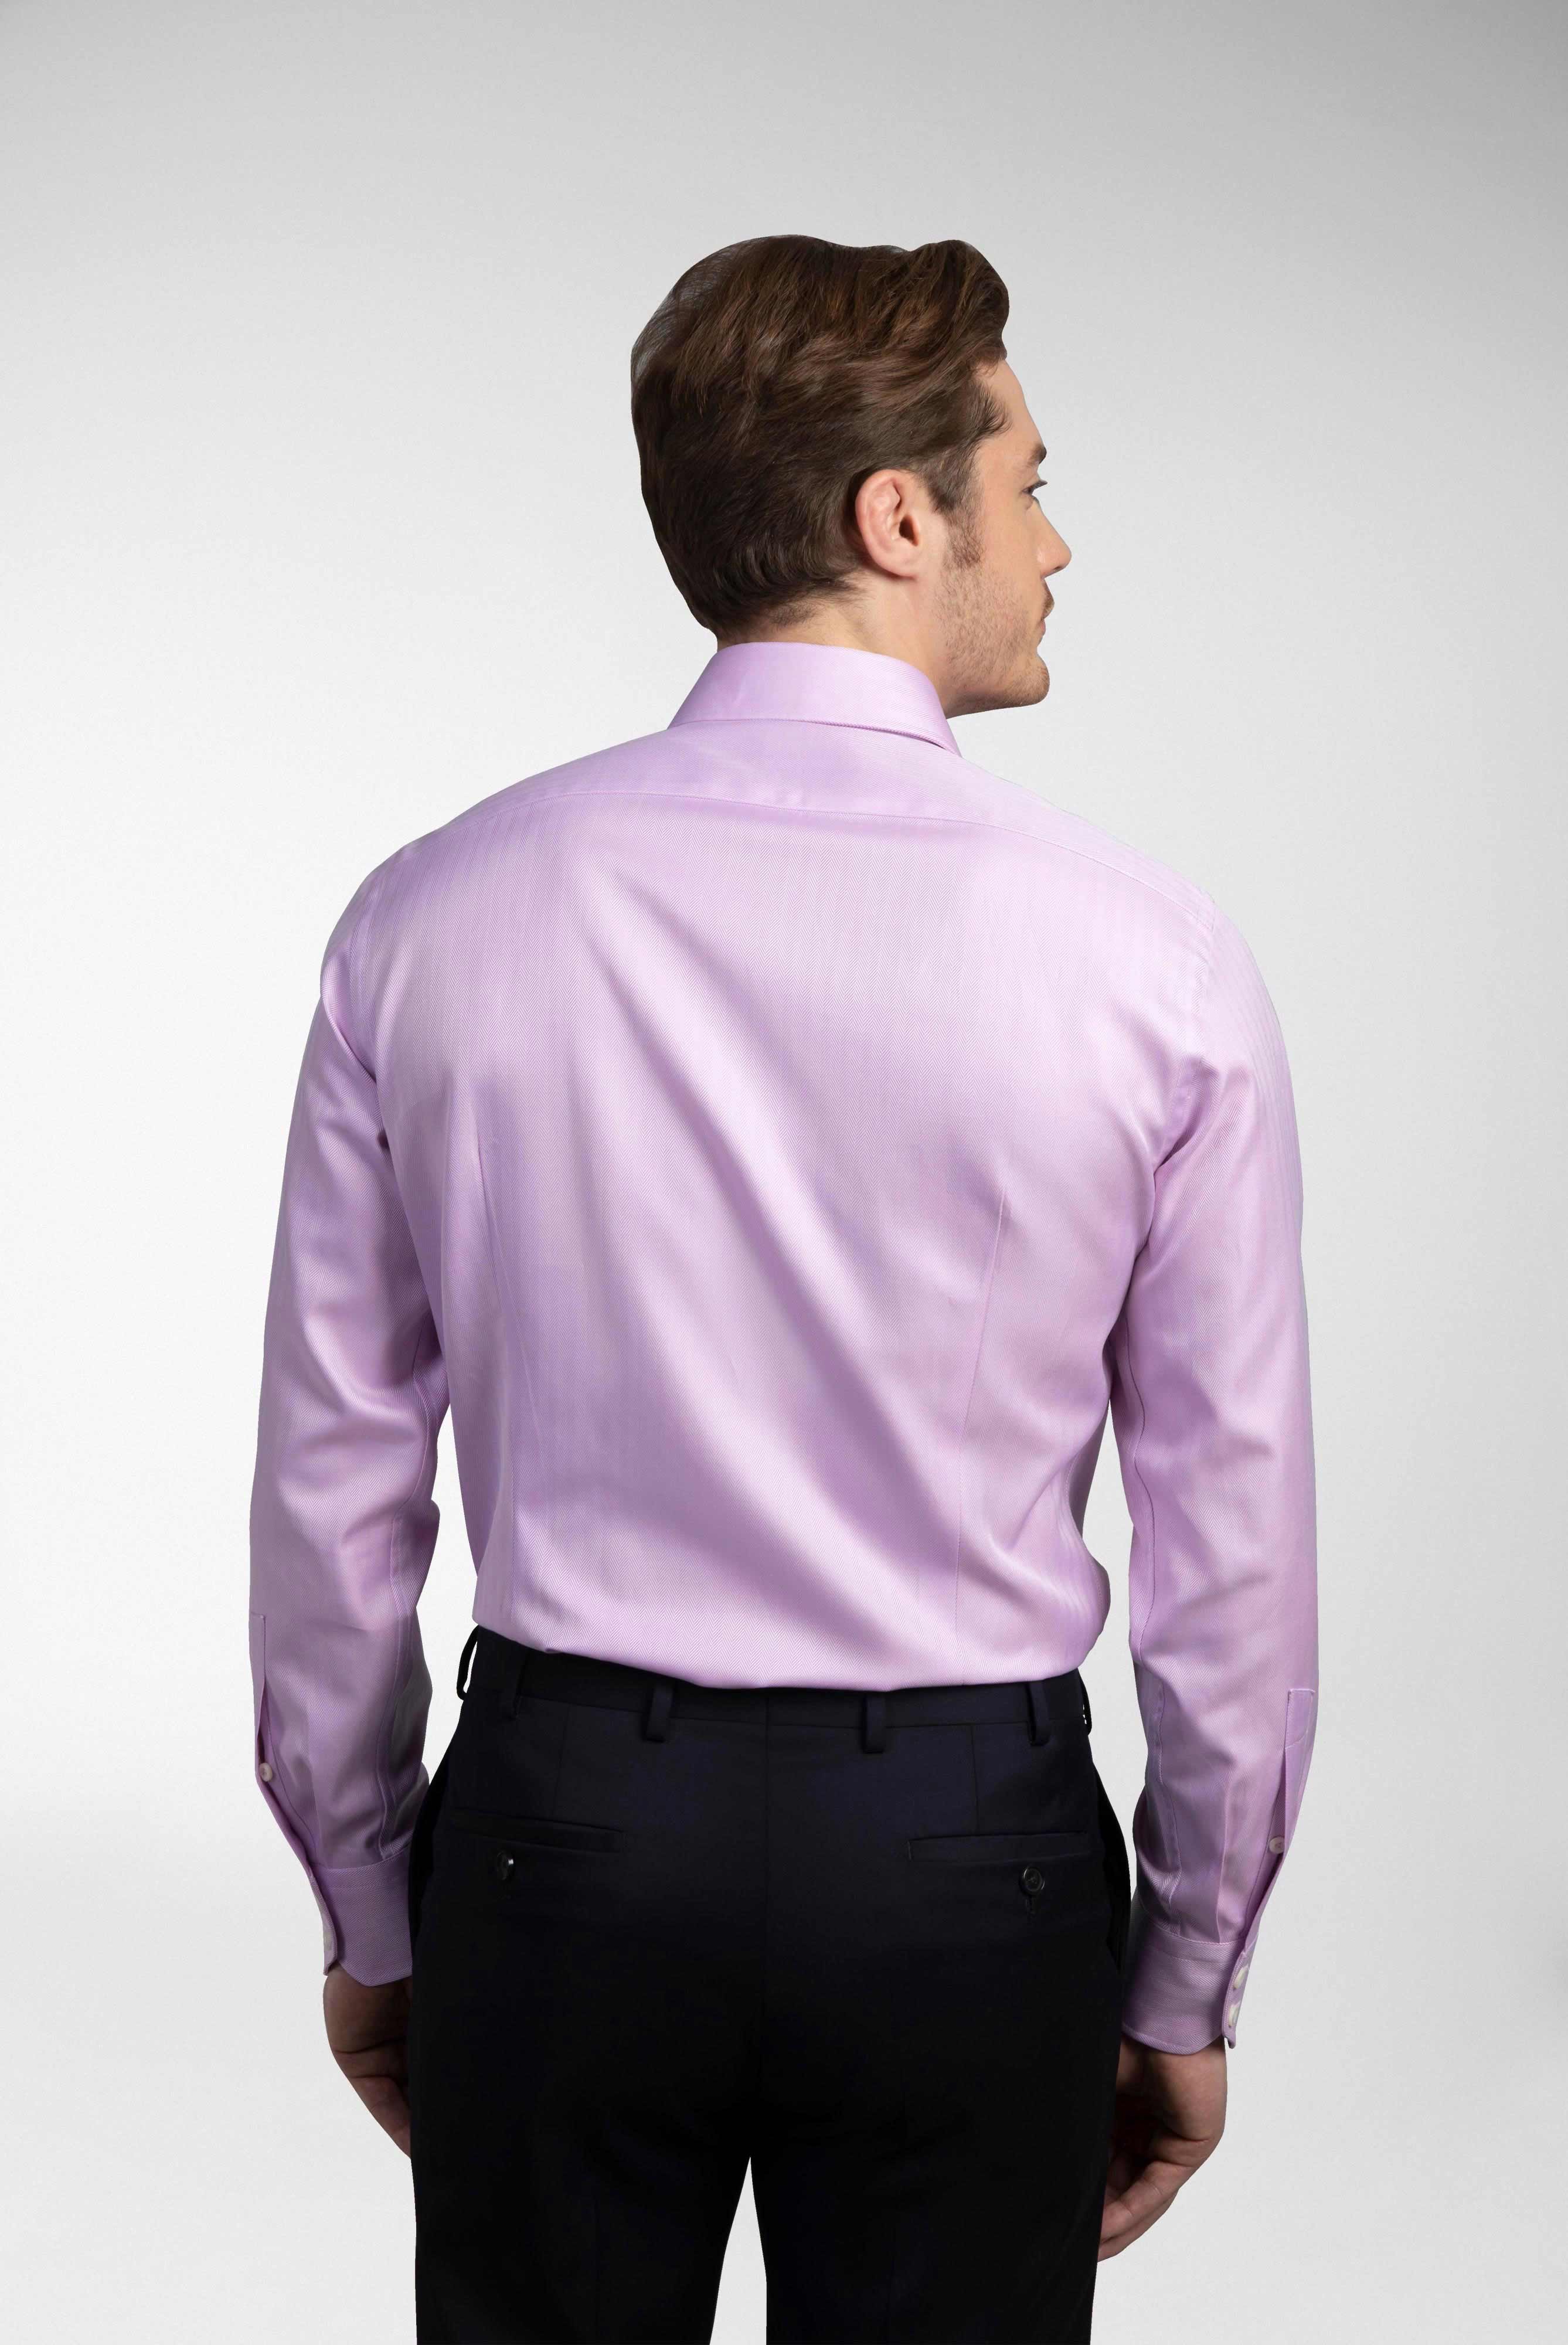 Business Hemden+Twill Hemd mit Fischgrat Tailor Fit+20.2020.AV.102501.610.41